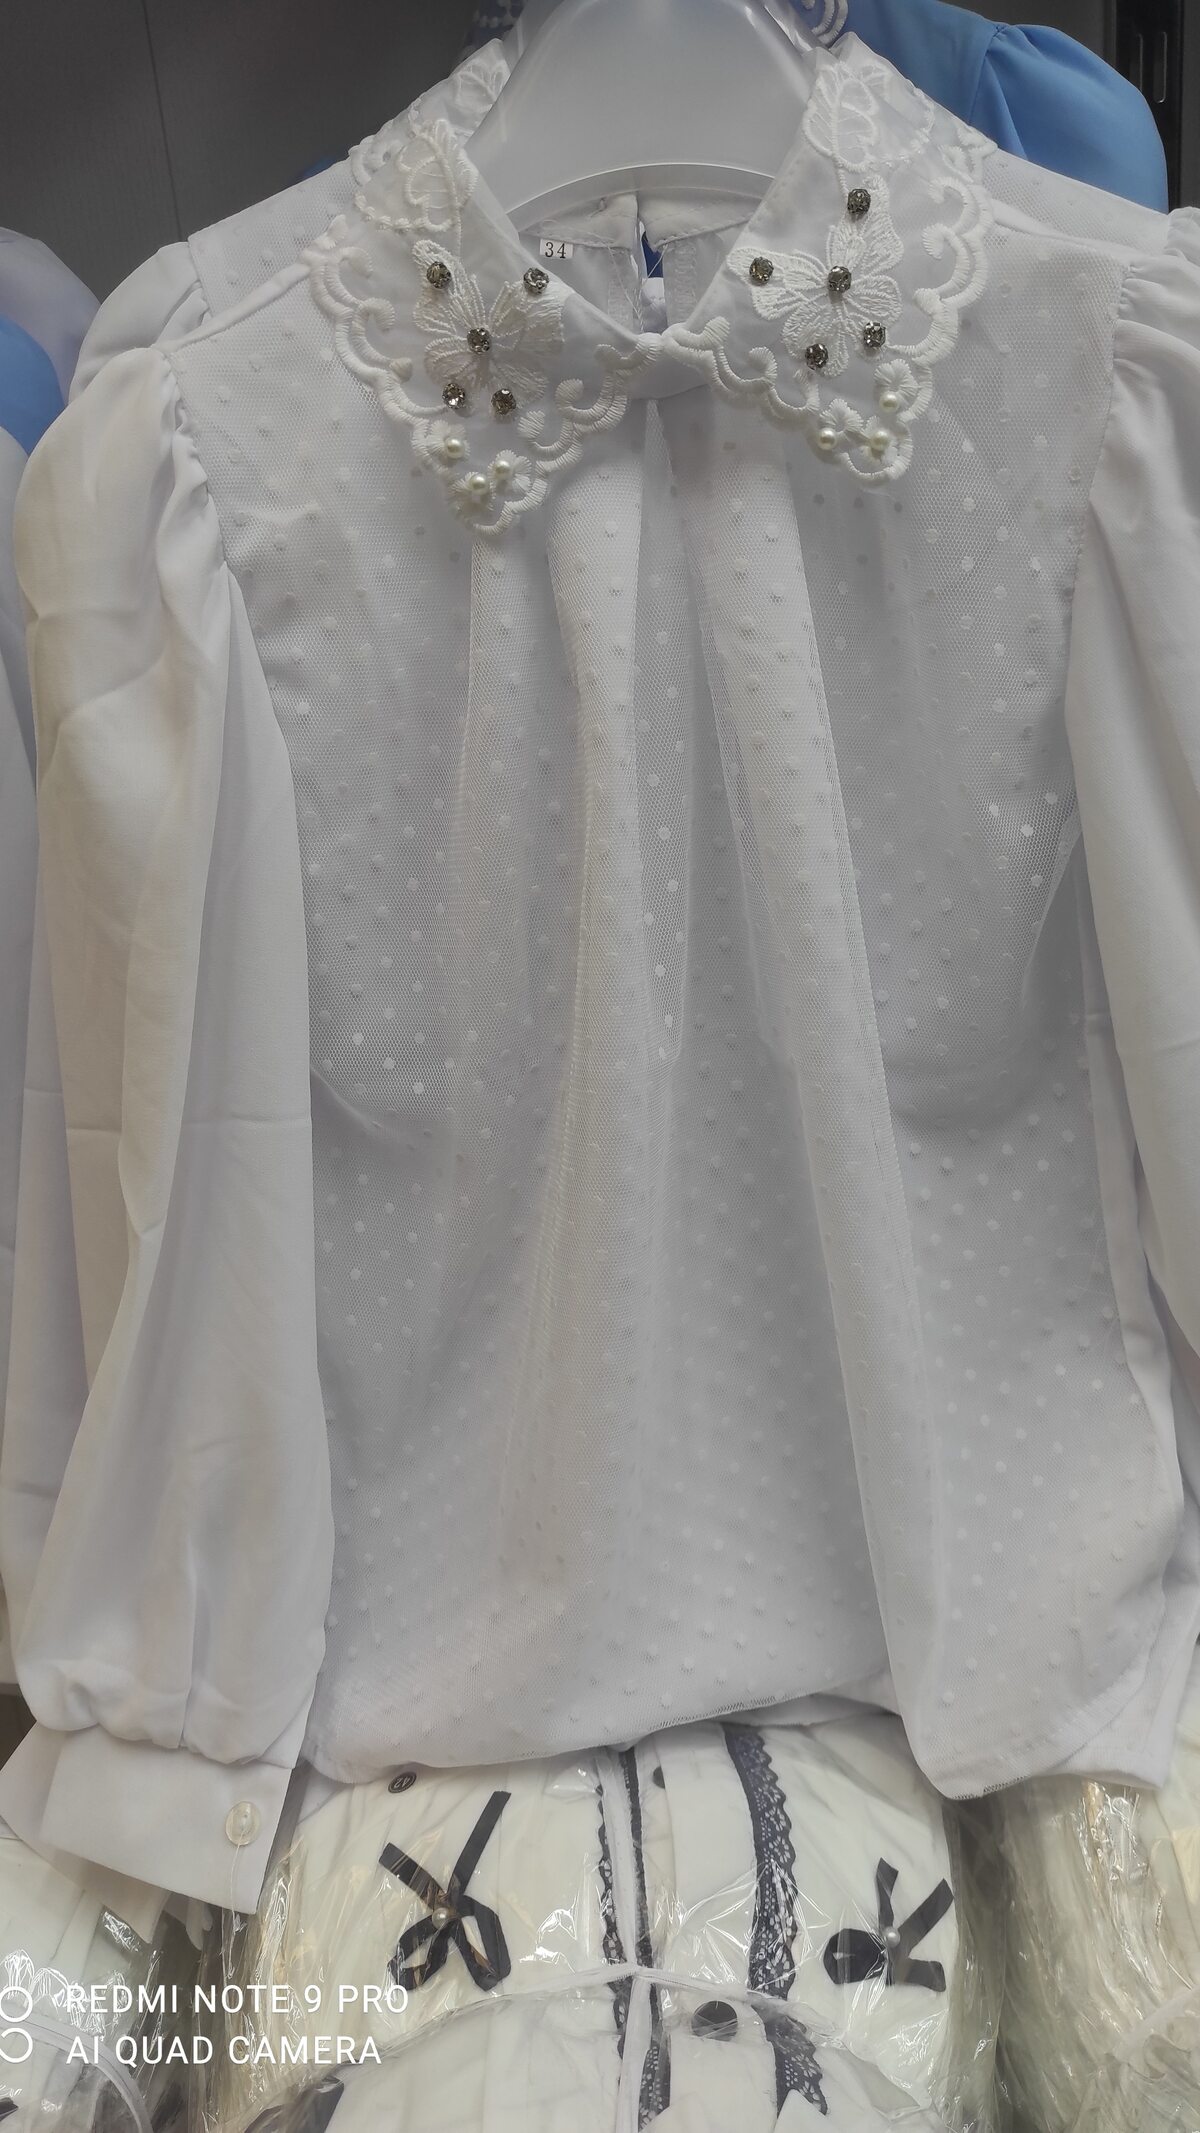 Блузки, блузка арт.481193